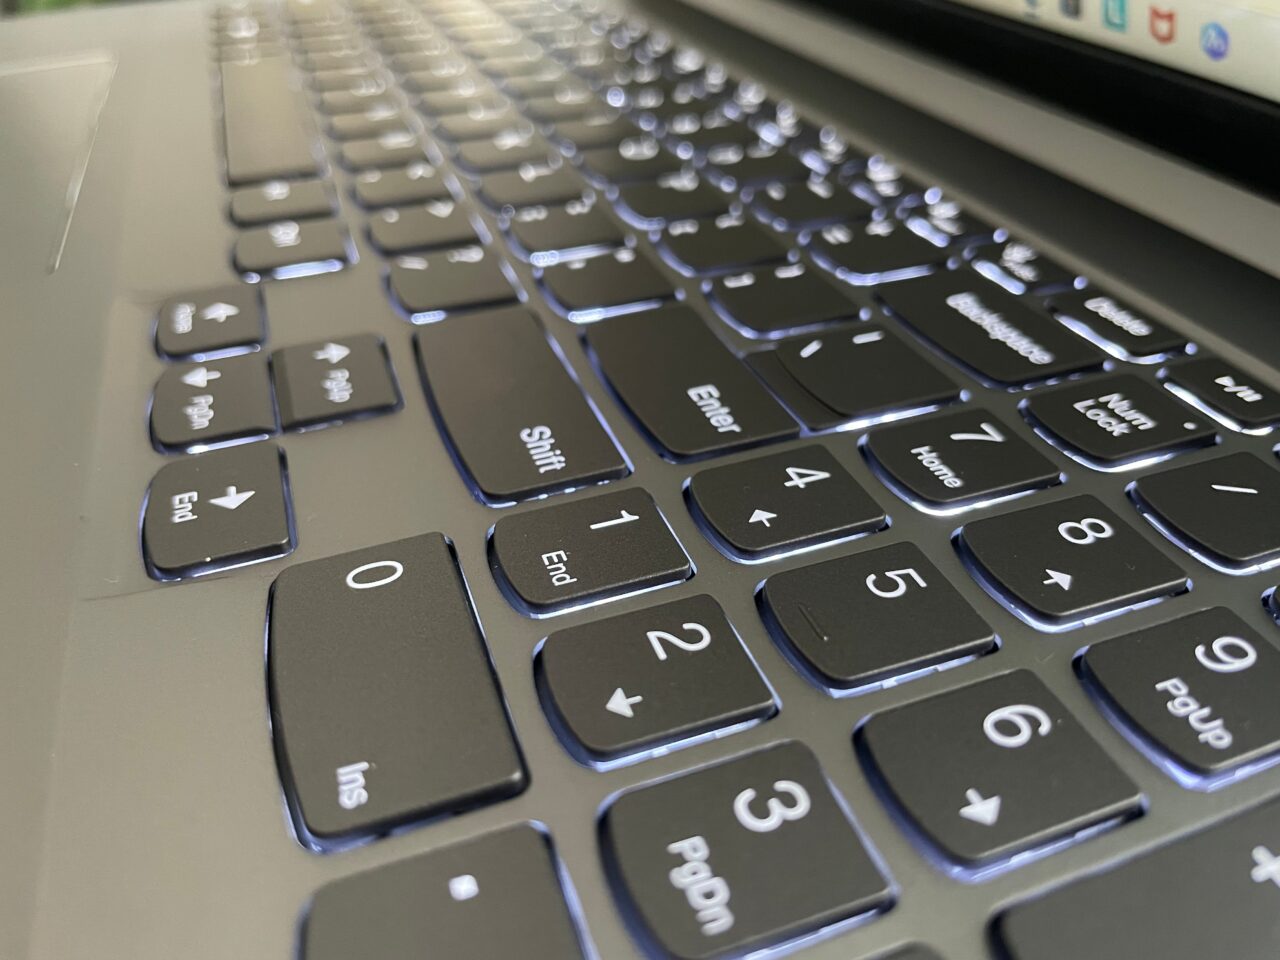 Klawiatura komputera z podświetlanymi klawiszami, perspektywa skośna części bloku numerycznego i klawiszy funkcyjnych.